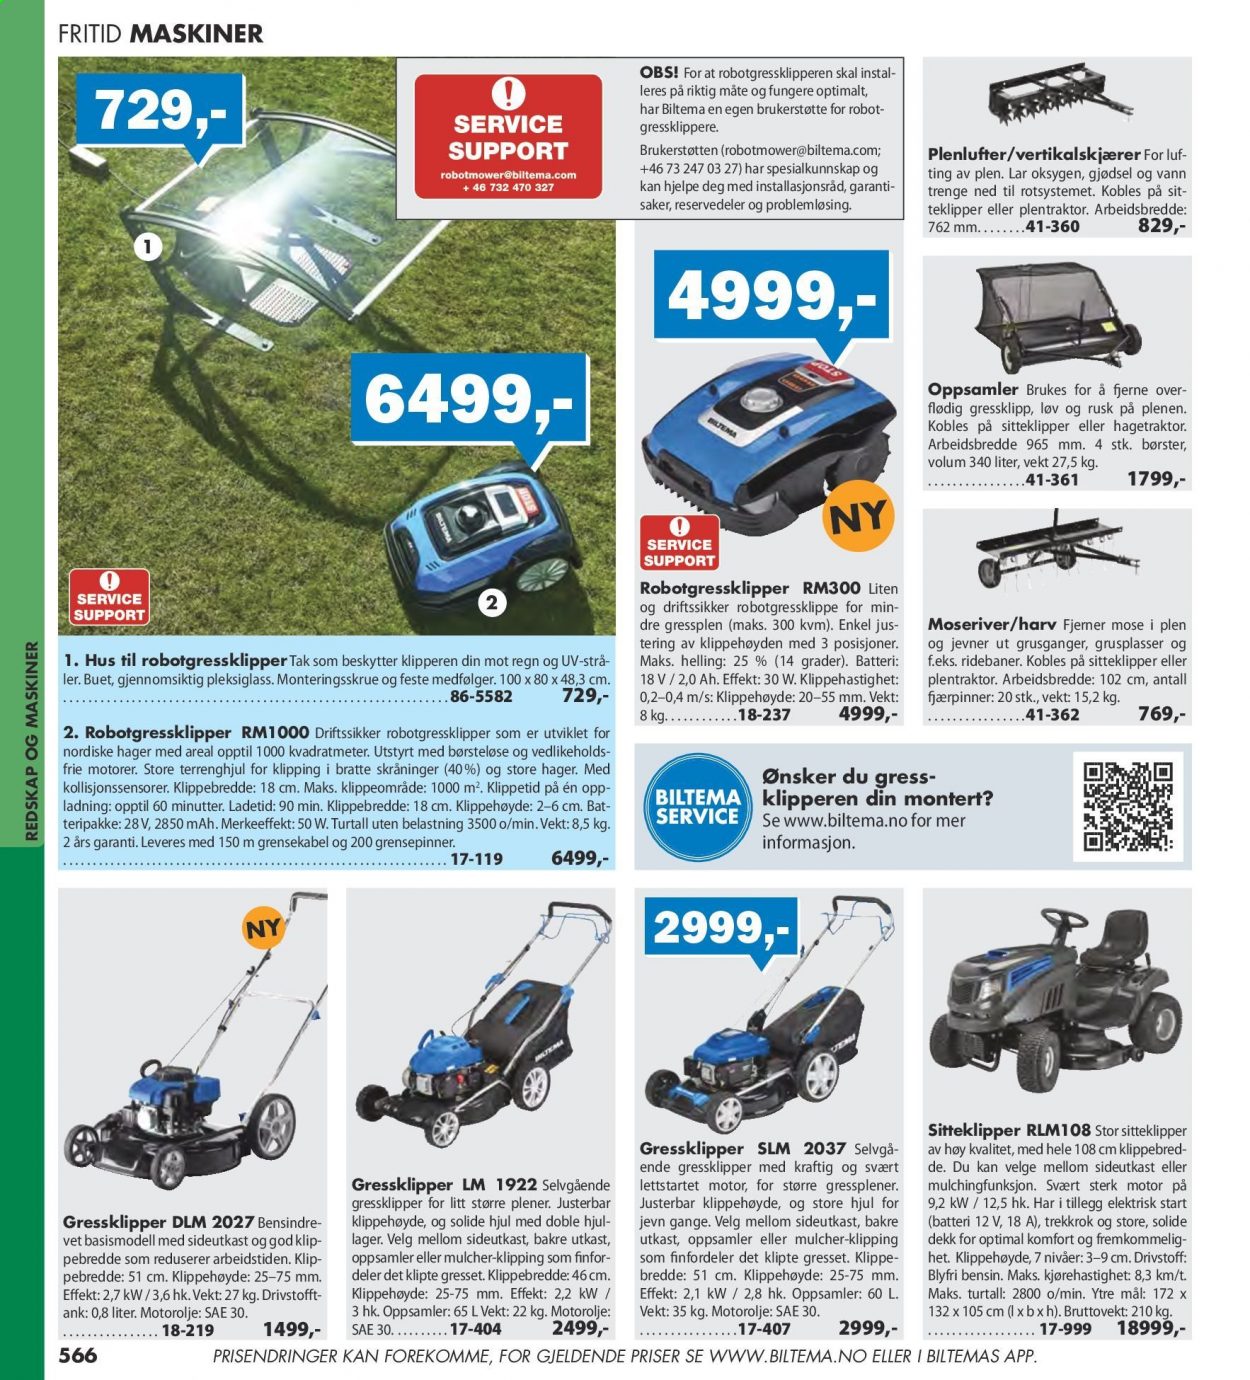 thumbnail - Kundeavis Biltema - Produkter fra tilbudsaviser - redskap, gressklipper, hagetraktor, motorolje. Side 566.